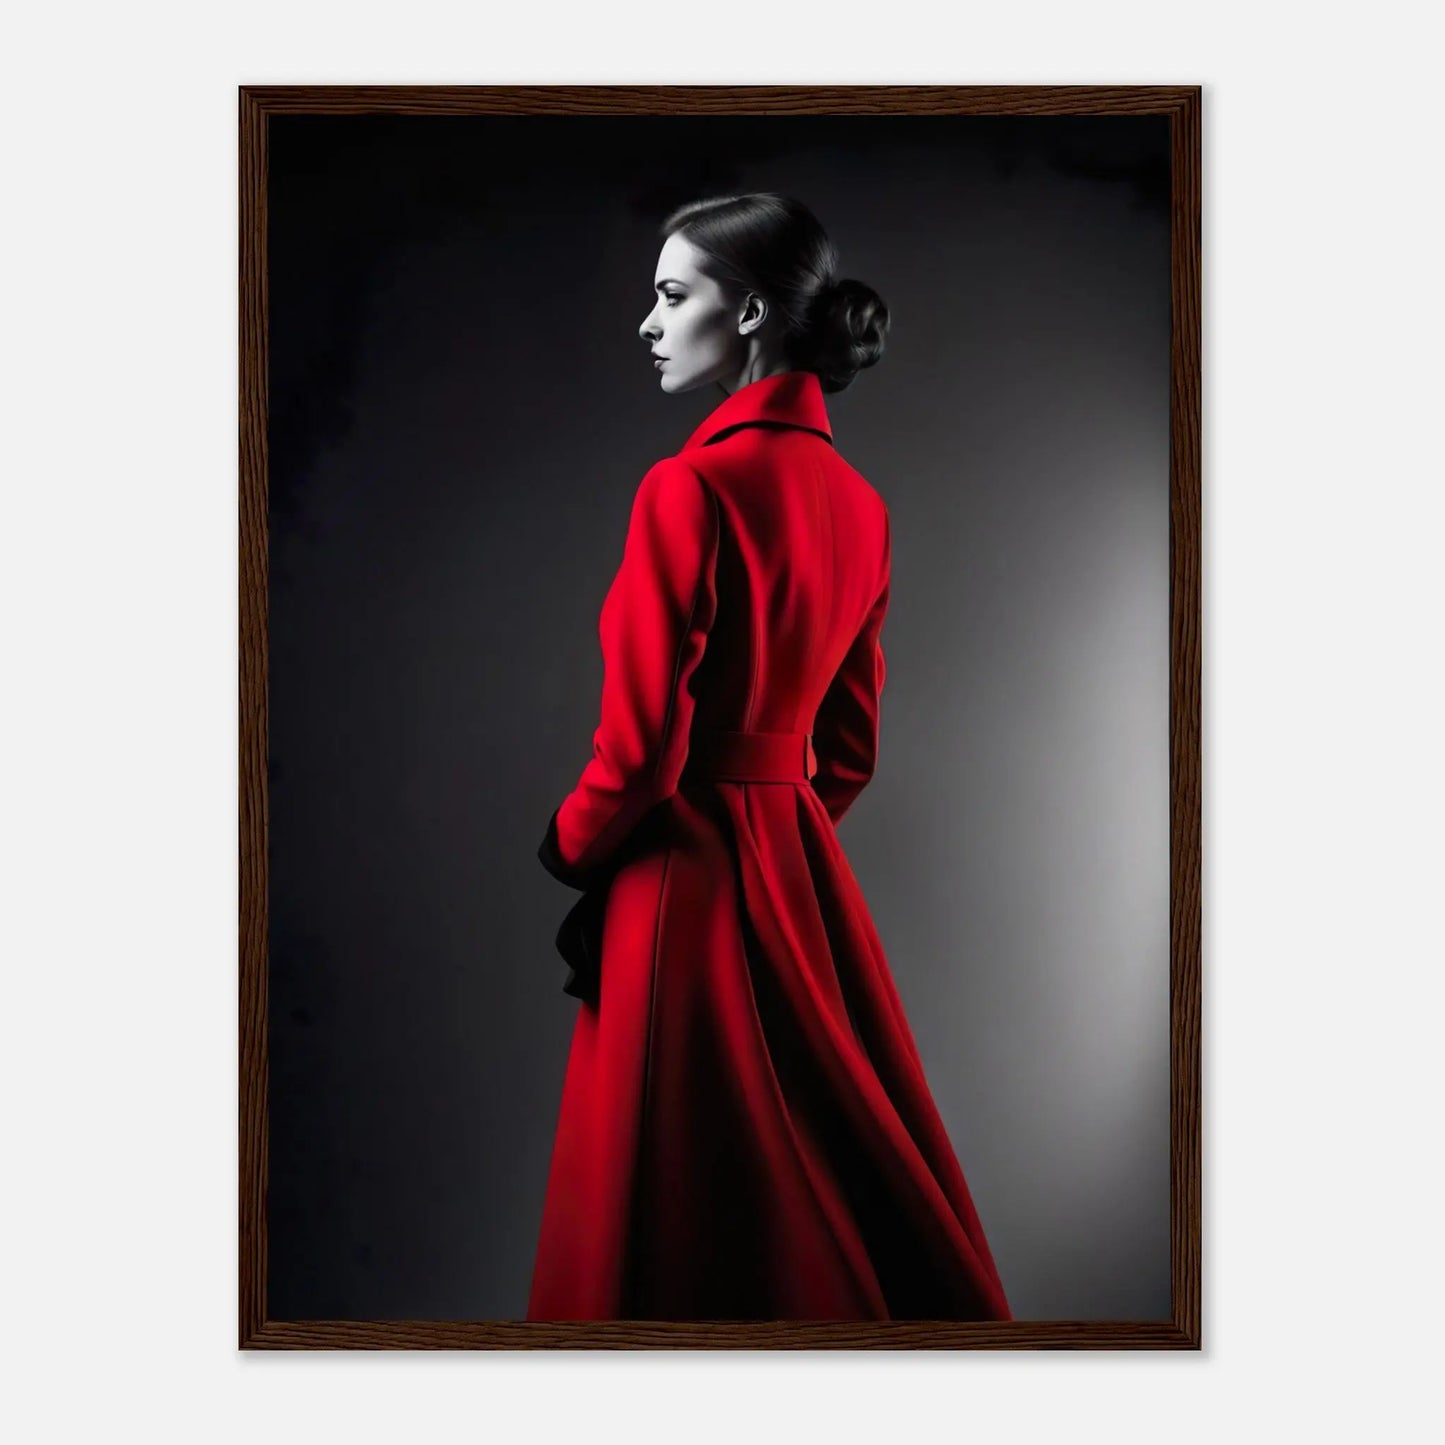 Gerahmtes Premium-Poster - Frau im roten Mantel - Schwarz-Weiß, KI-Kunst - RolConArt, Schwarz-Weiß mit Akzentfarben, 45x60-cm-18x24-Dunkler-Holzrahmen